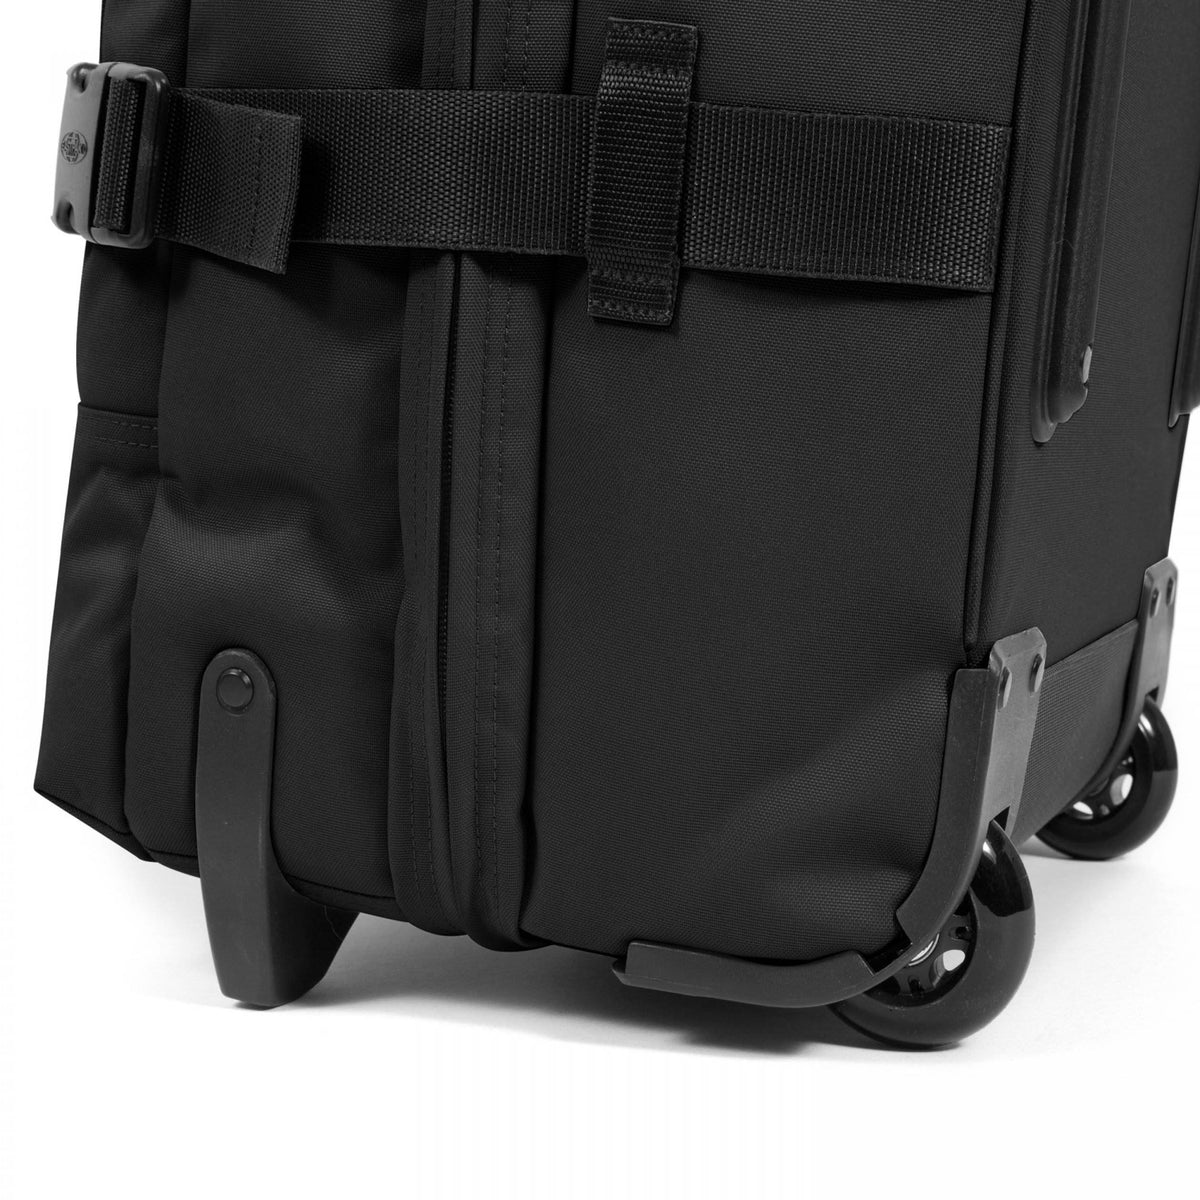 Eastpak Tranverz S Cabin Suitcase - Black